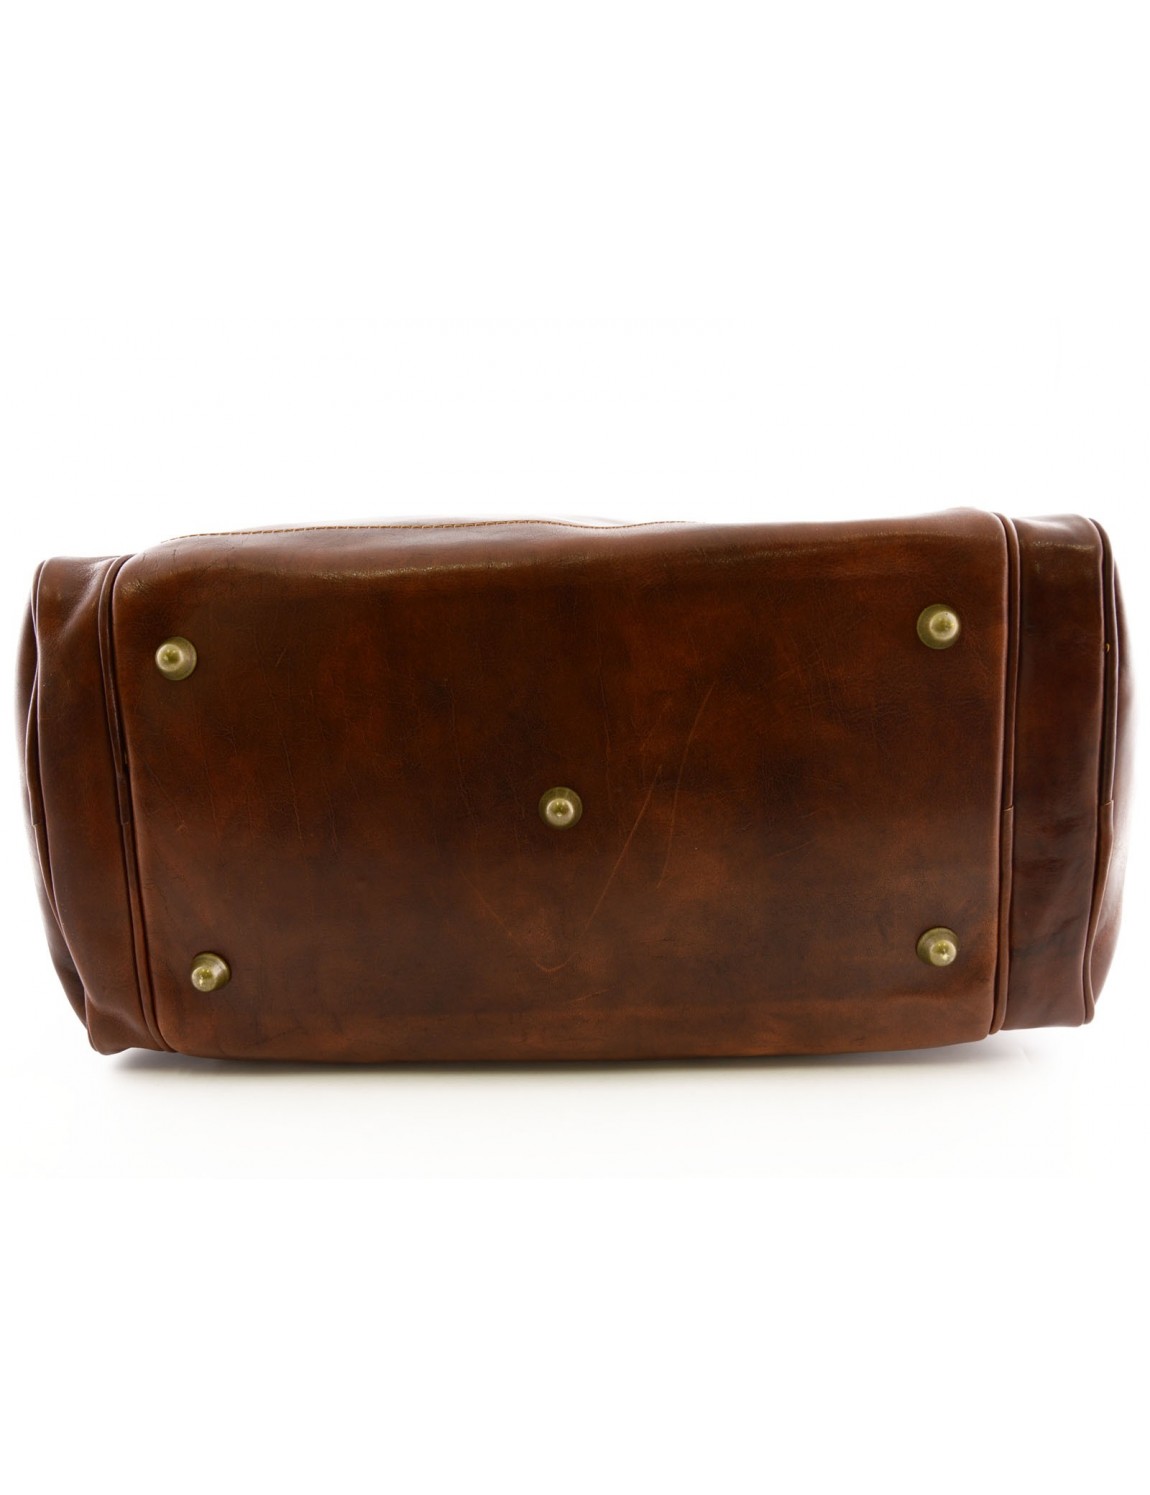 Genuine Leather Travel Bag 2 Side Pockets - Kylan